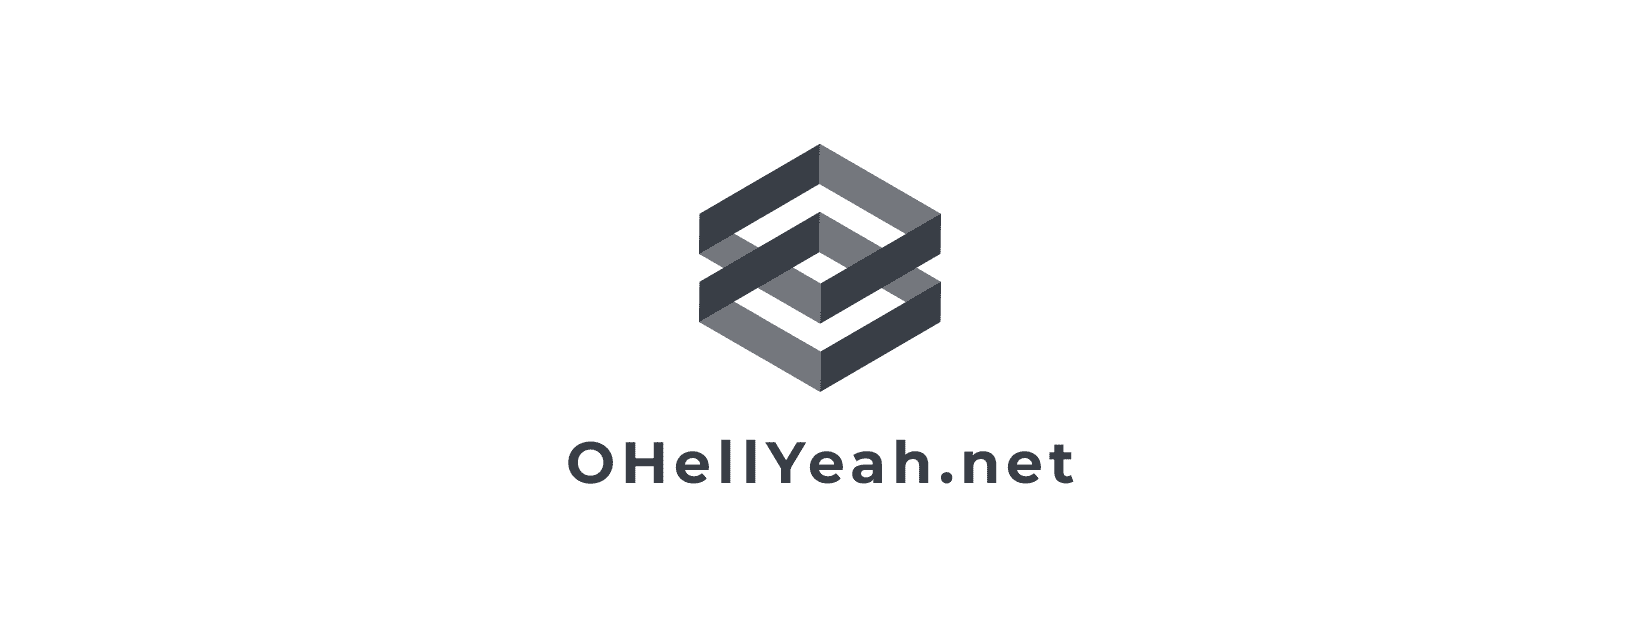 ohellyeah.net